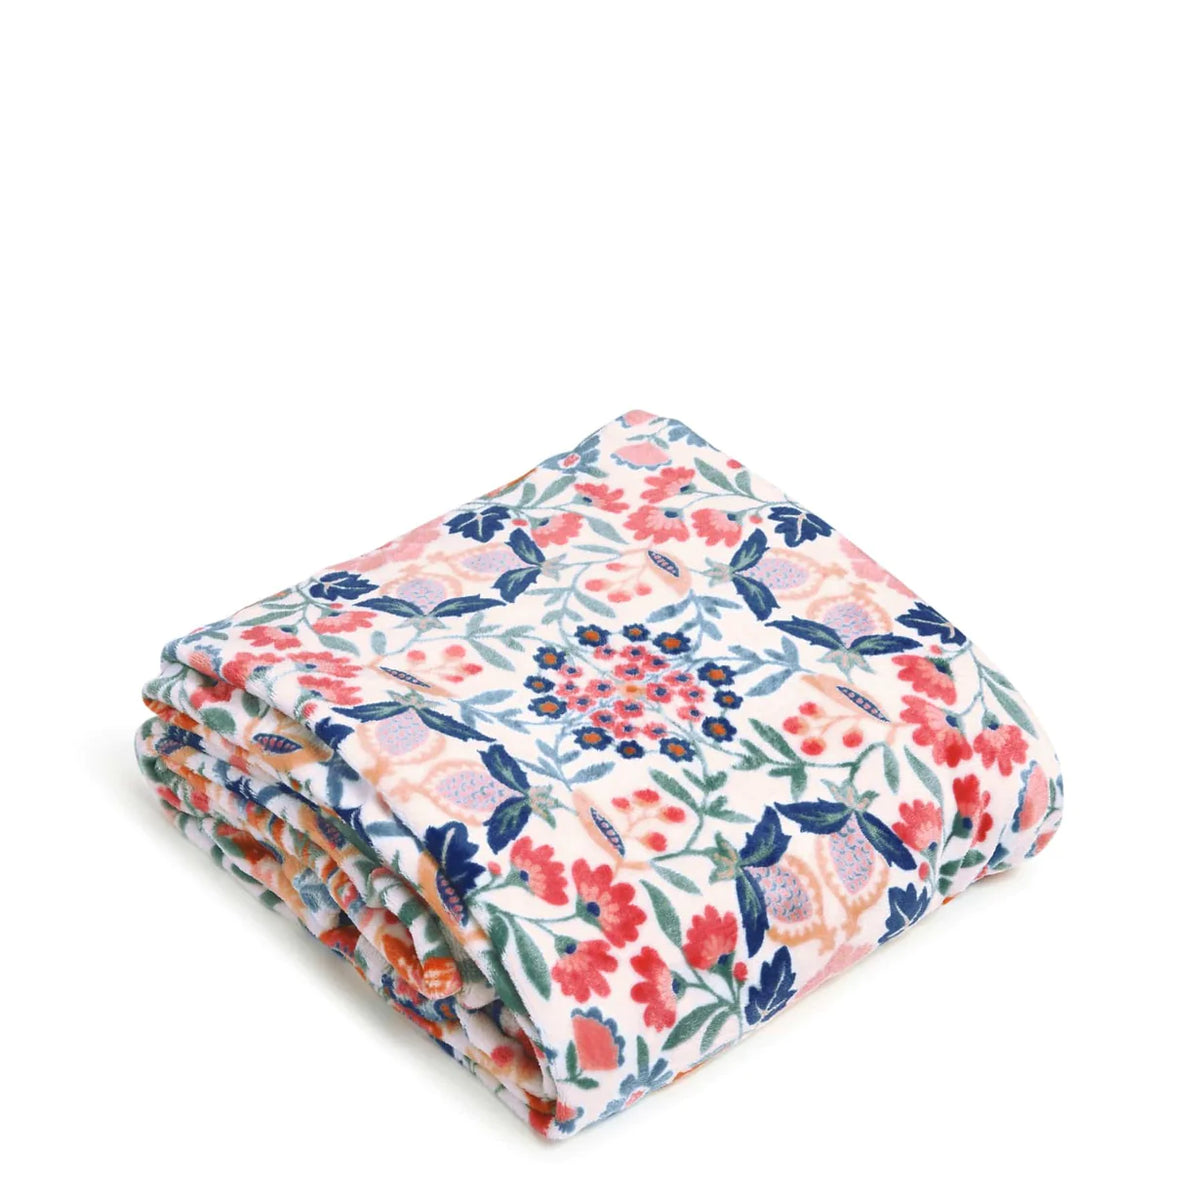 Plush Throw Blanket - Zinnias Gift Boutique